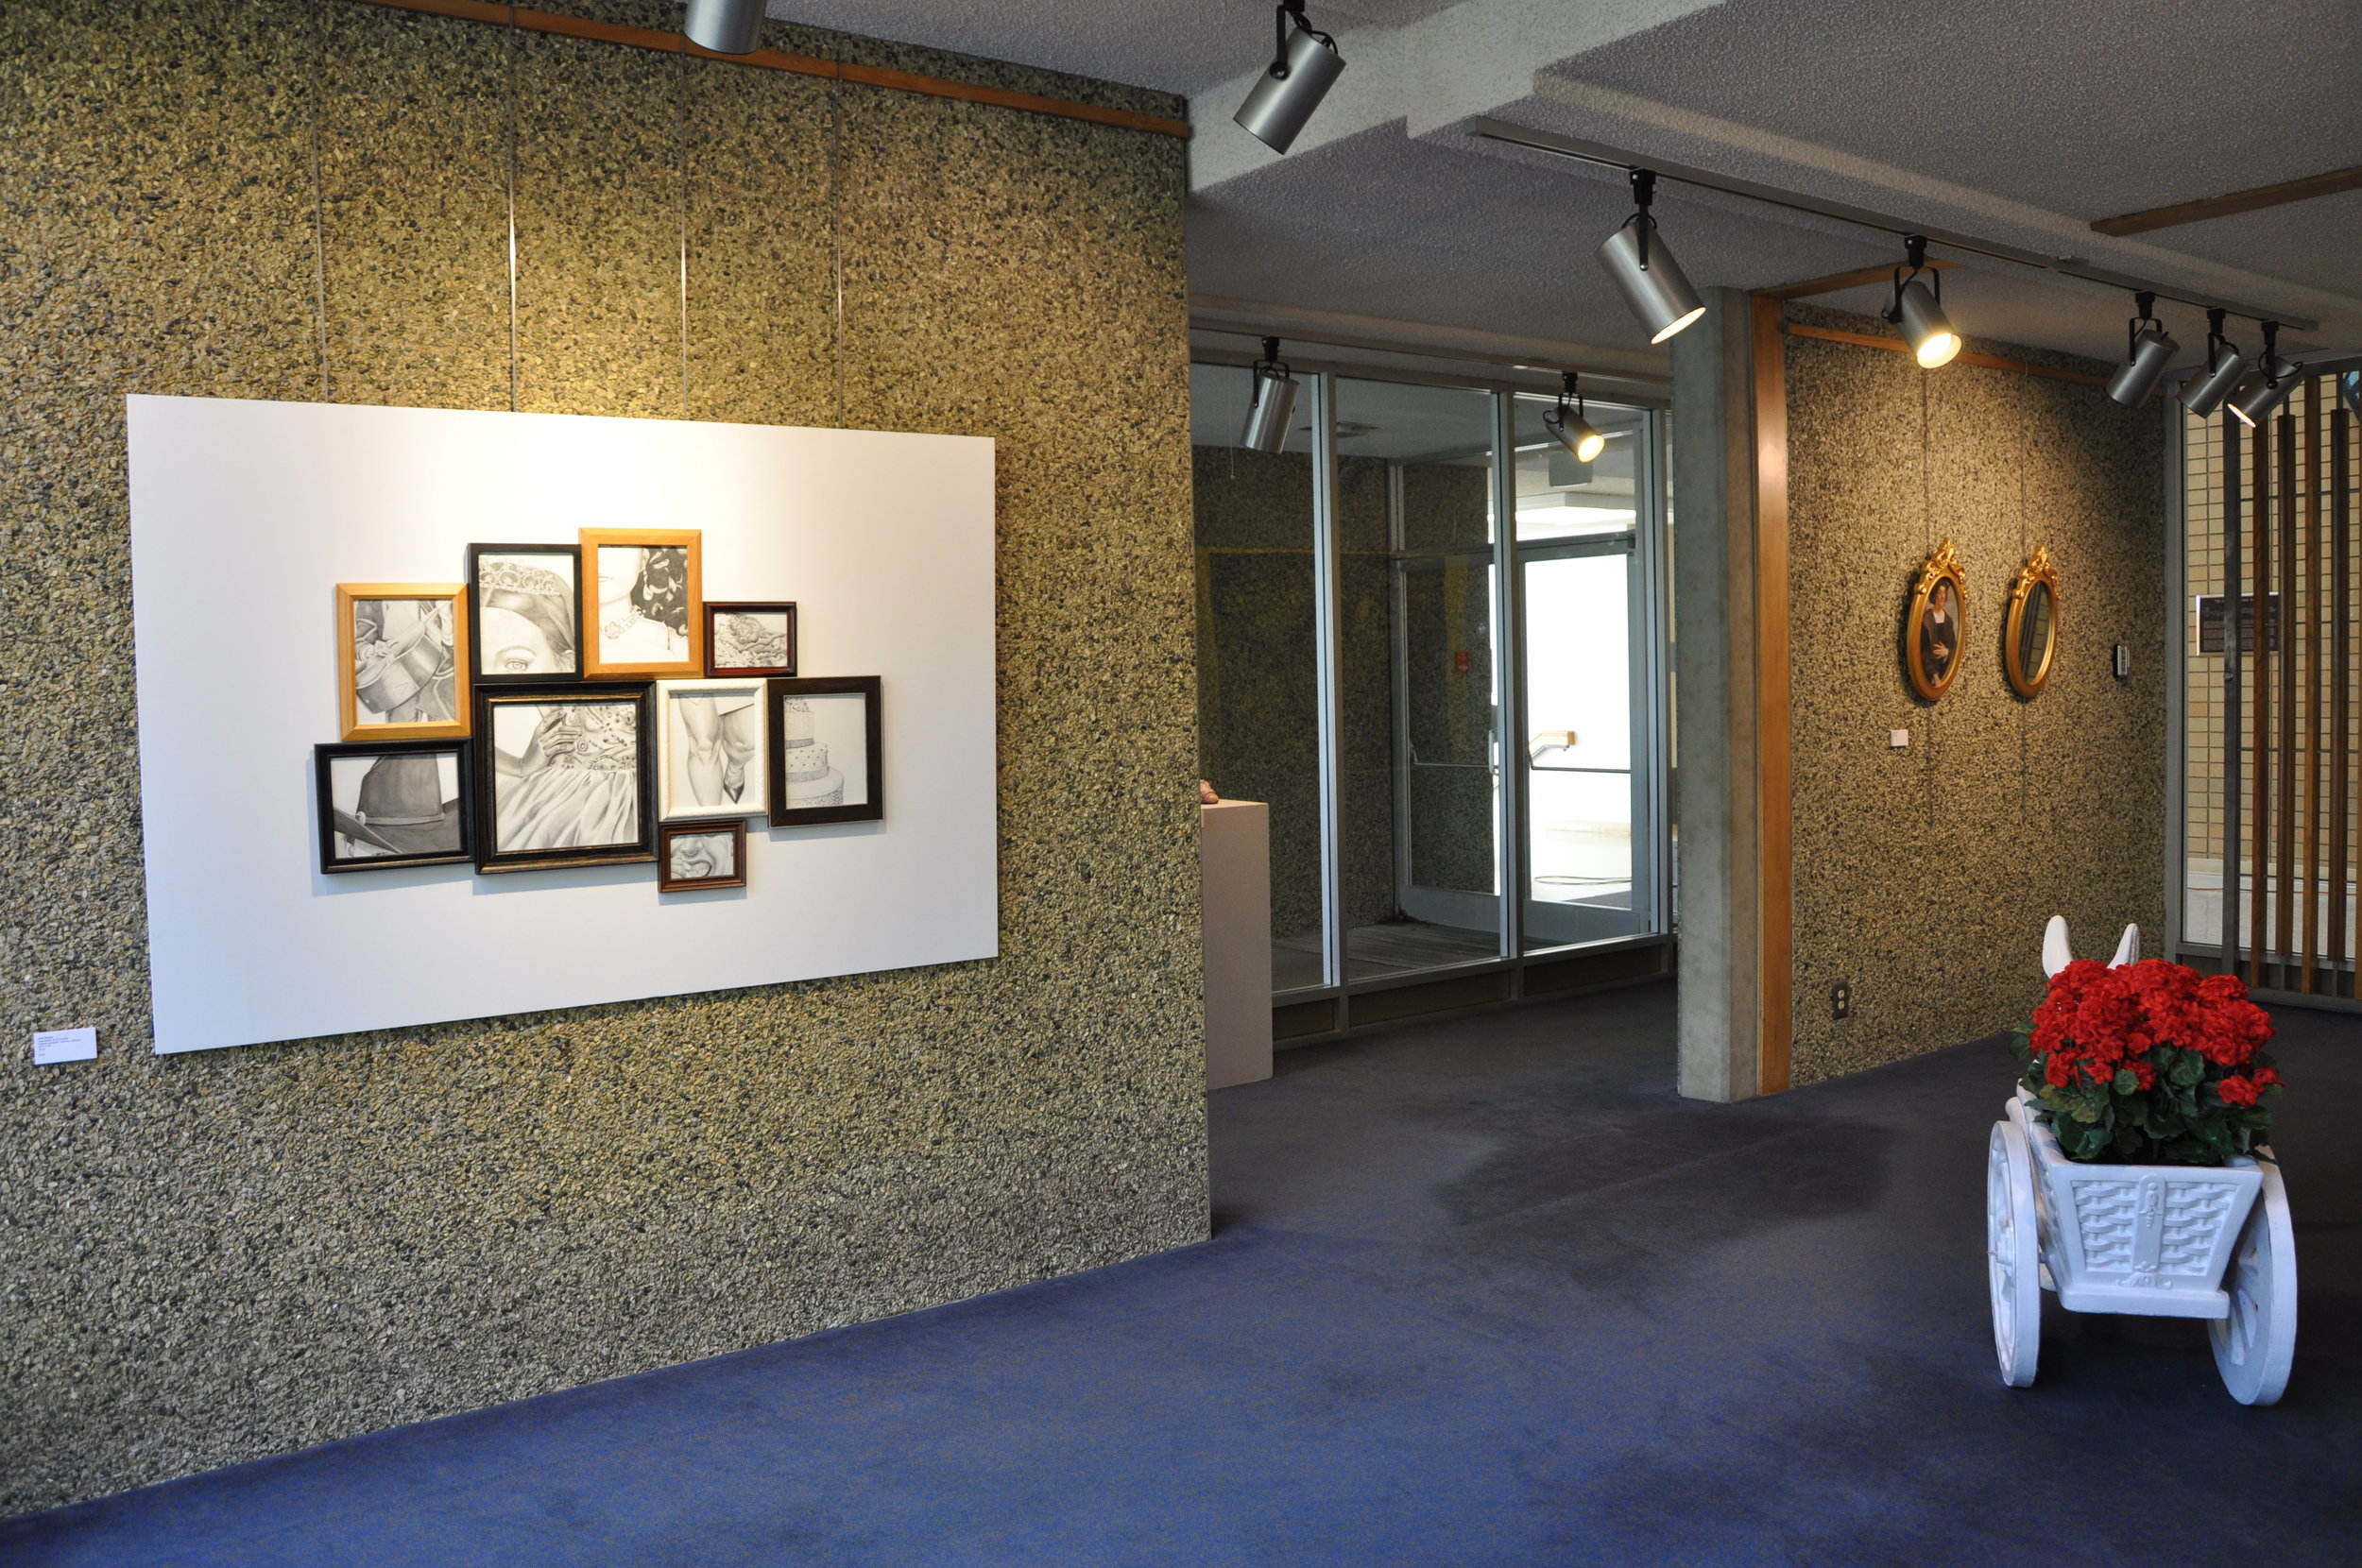   Poetics of Place  (Installation View) Left Wall: Joel Gaytan; Right Wall: Jennifer Acevado; Floor: Juventino Aranda 